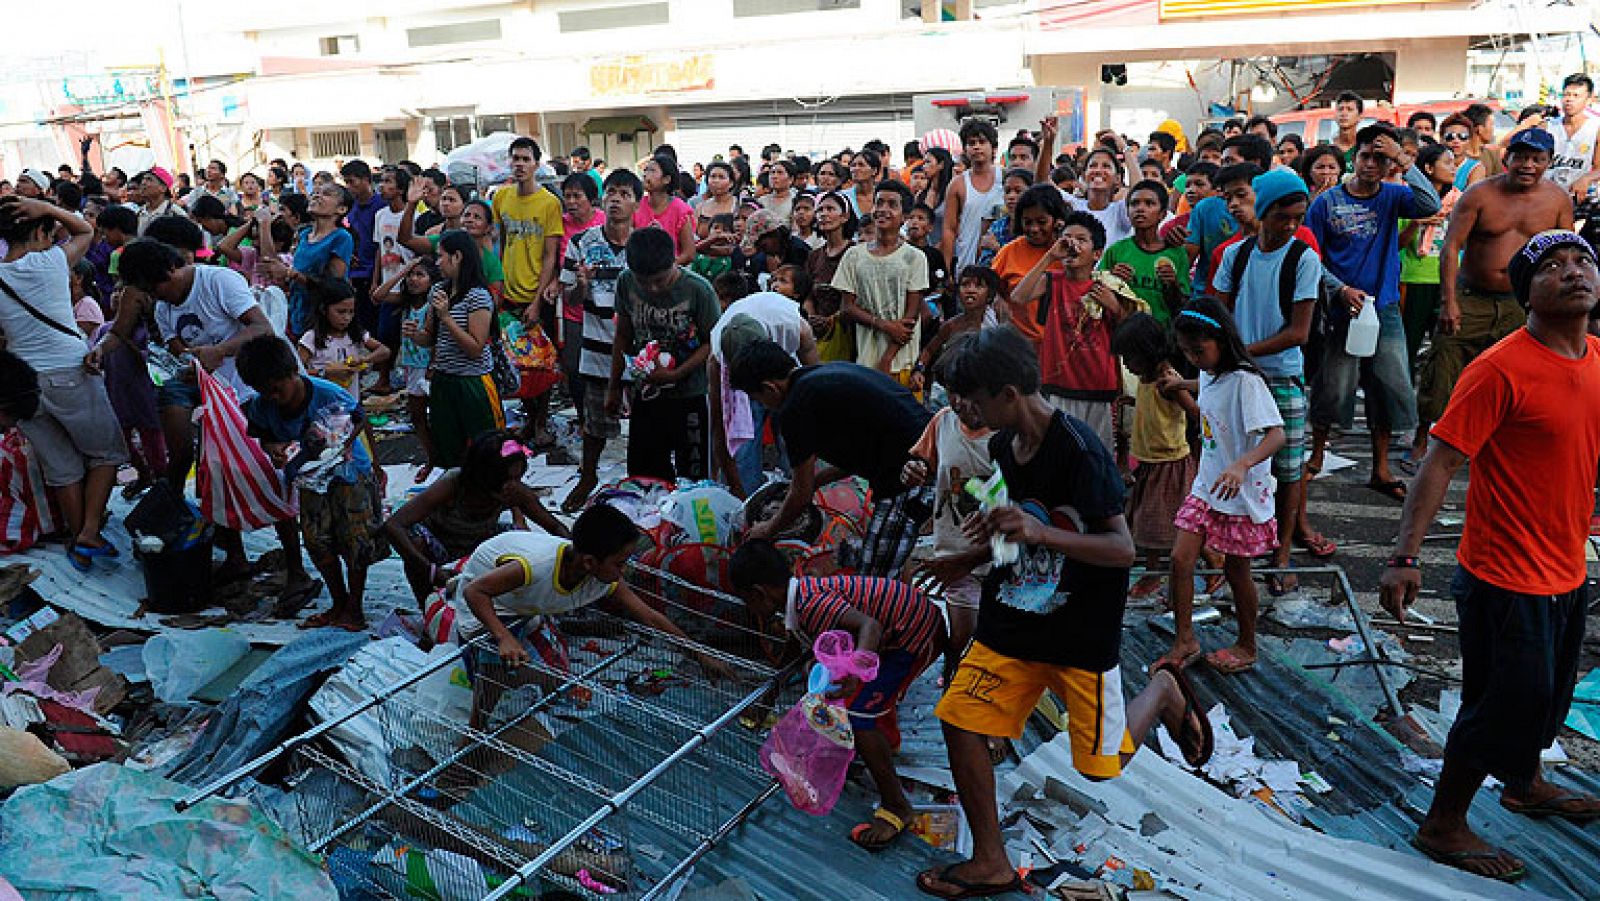   La ONU trabaja con los cálculos de que el tifón Haiyán ha causado en torno a 10.000 muertos en Filipinas, hann dicho fuentes de ayuda humanitaria de la organización que consideraron esas proyecciones como "bastante estables".